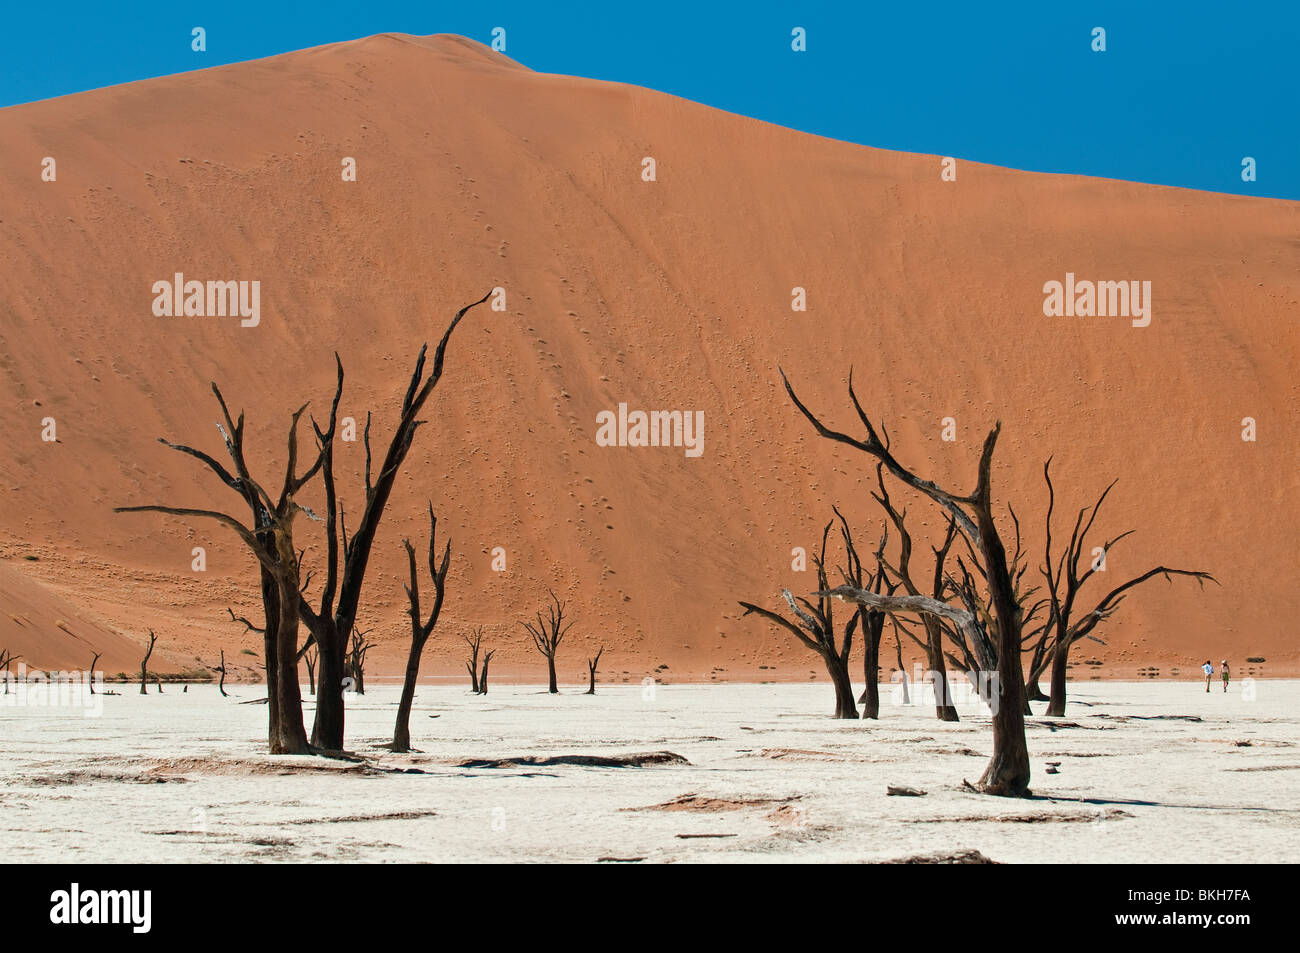 Blackened Camel Thorn Trees in Deadvlei, Sossusvlei, Namibia Stock Photo